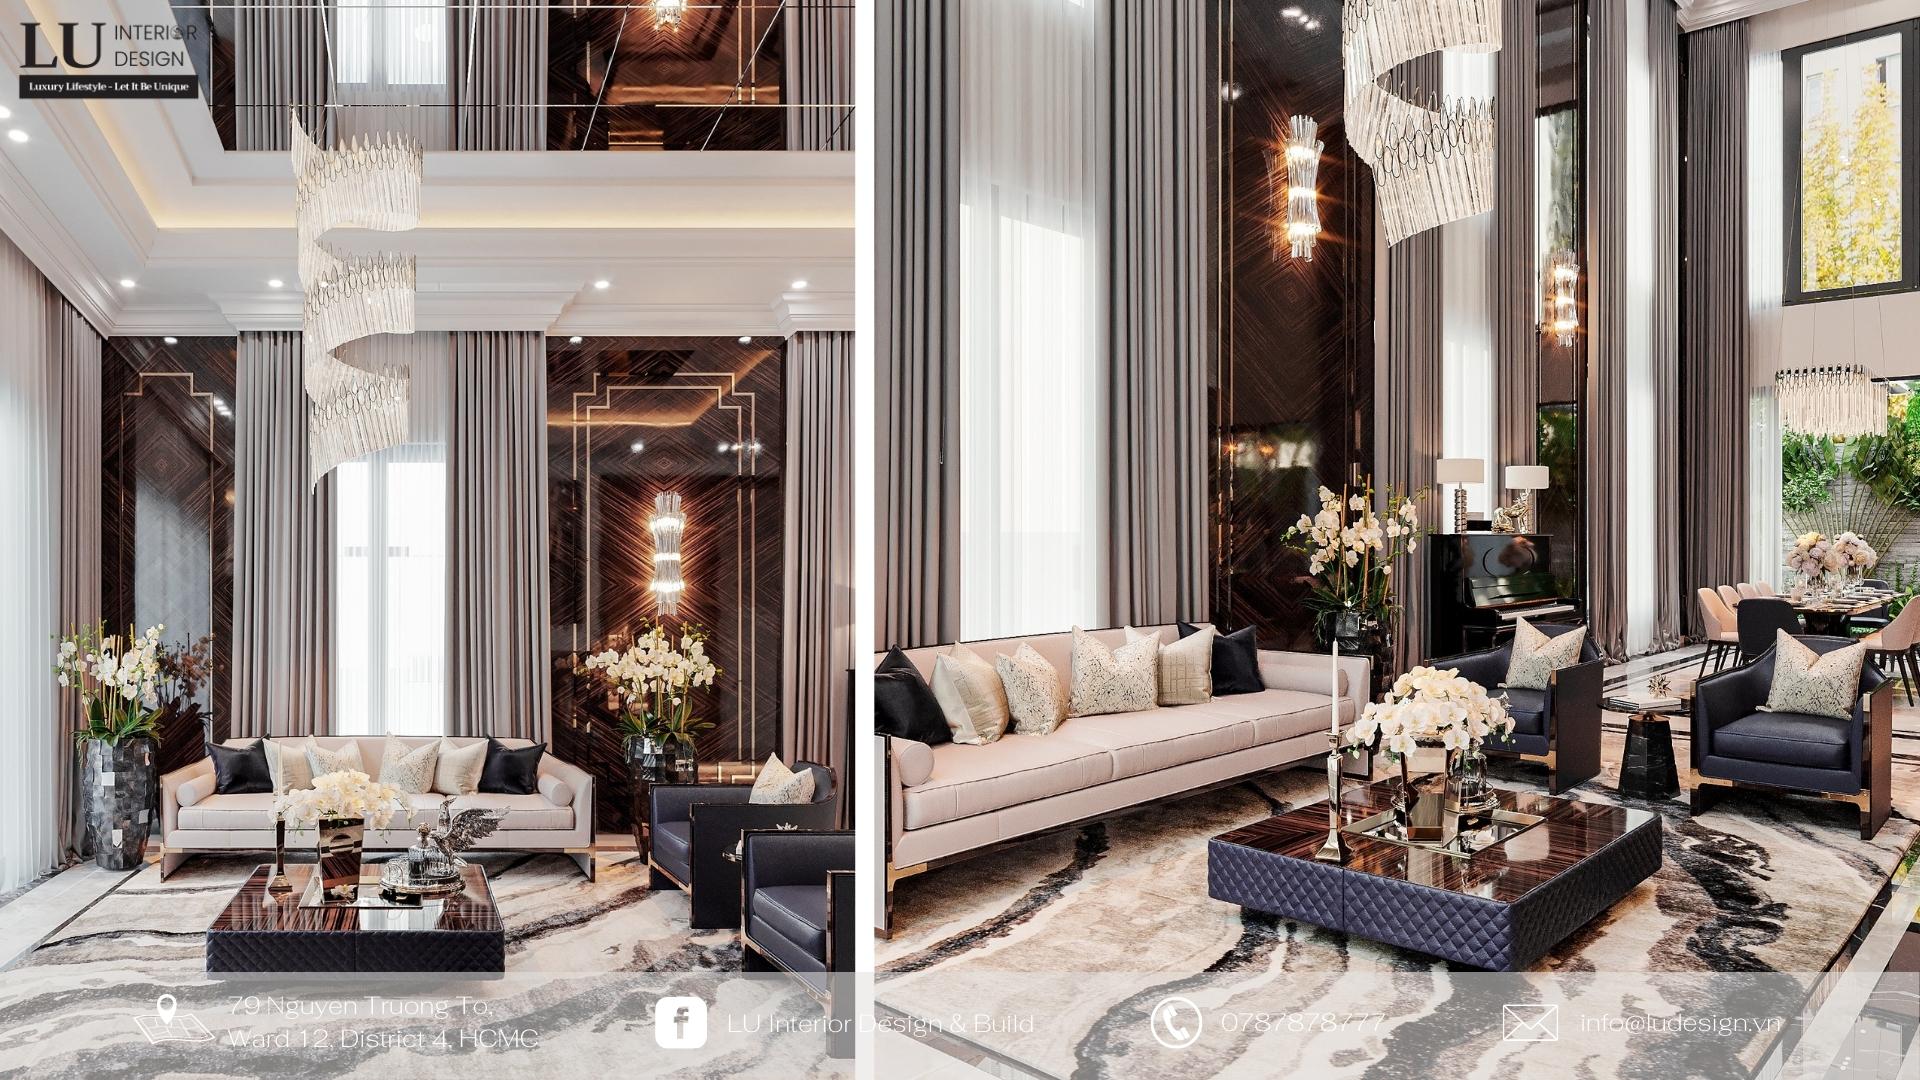 Quy tắc thiết kế nội thất phòng khách theo phong thủy | Nguồn ảnh: Villa Tân Phú - LU Design.